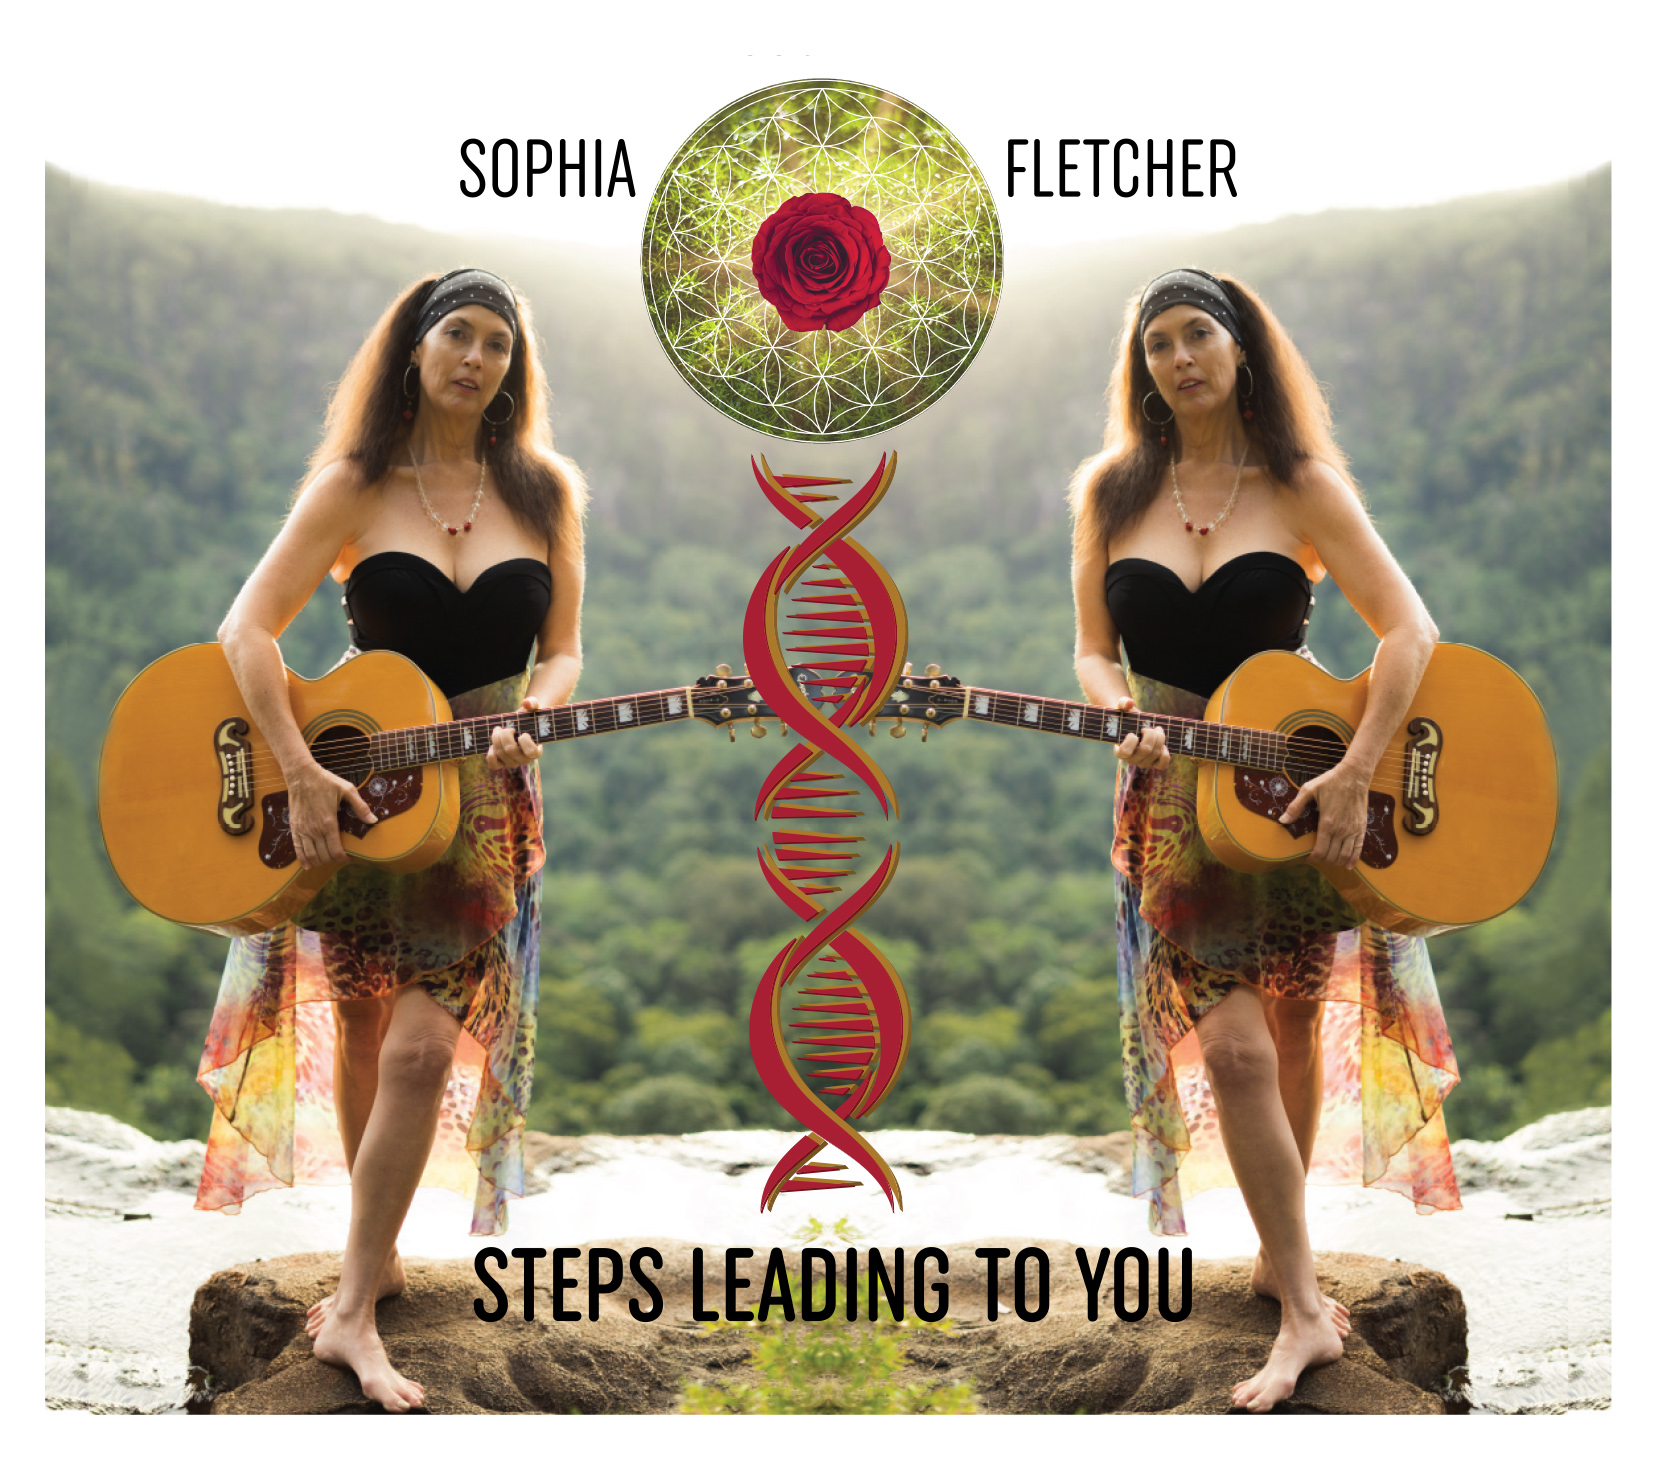 Sophia Music Album Image. 